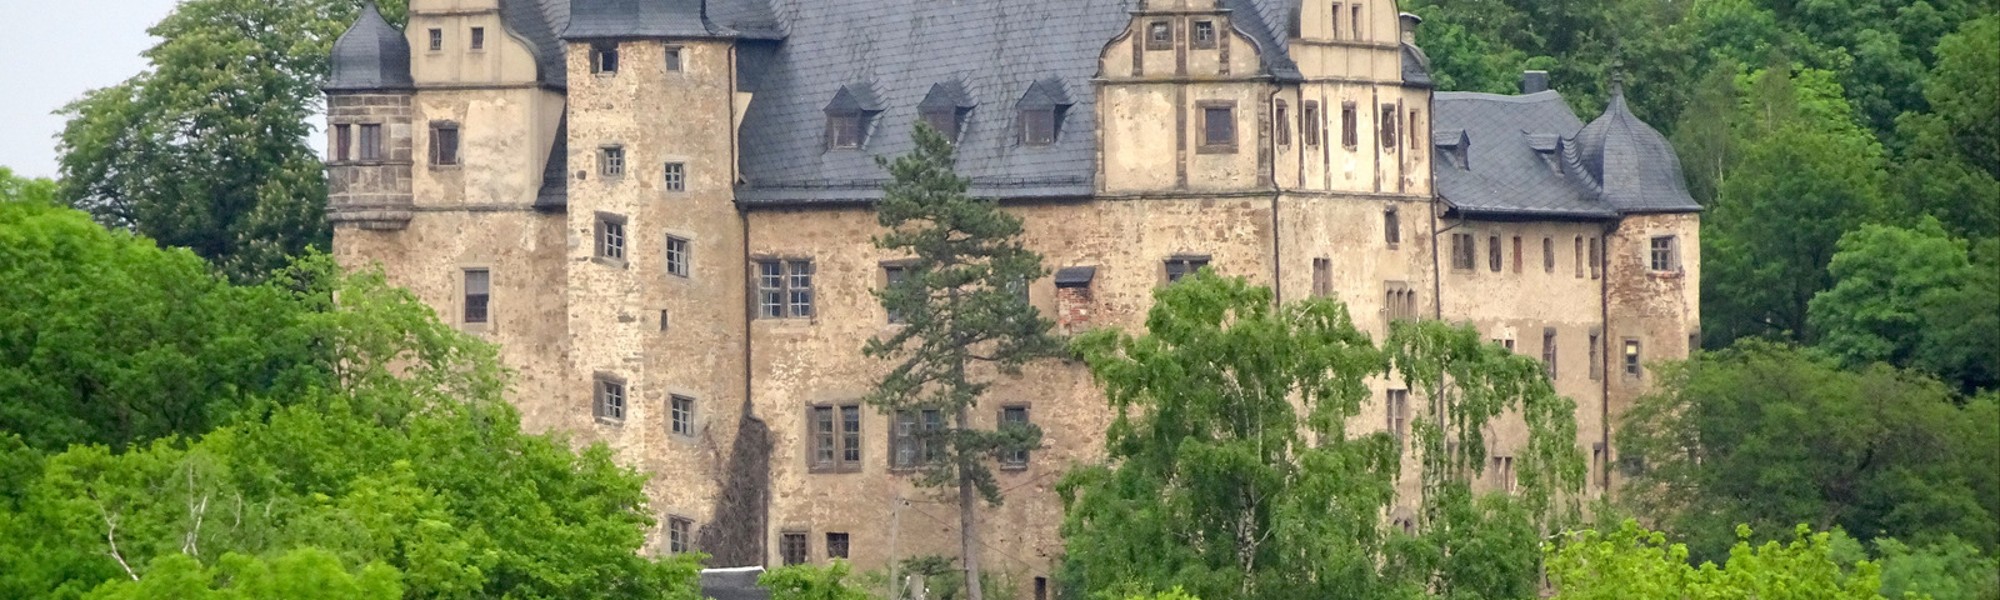 Fotos Schloss kaufen Thüringen: Könitz